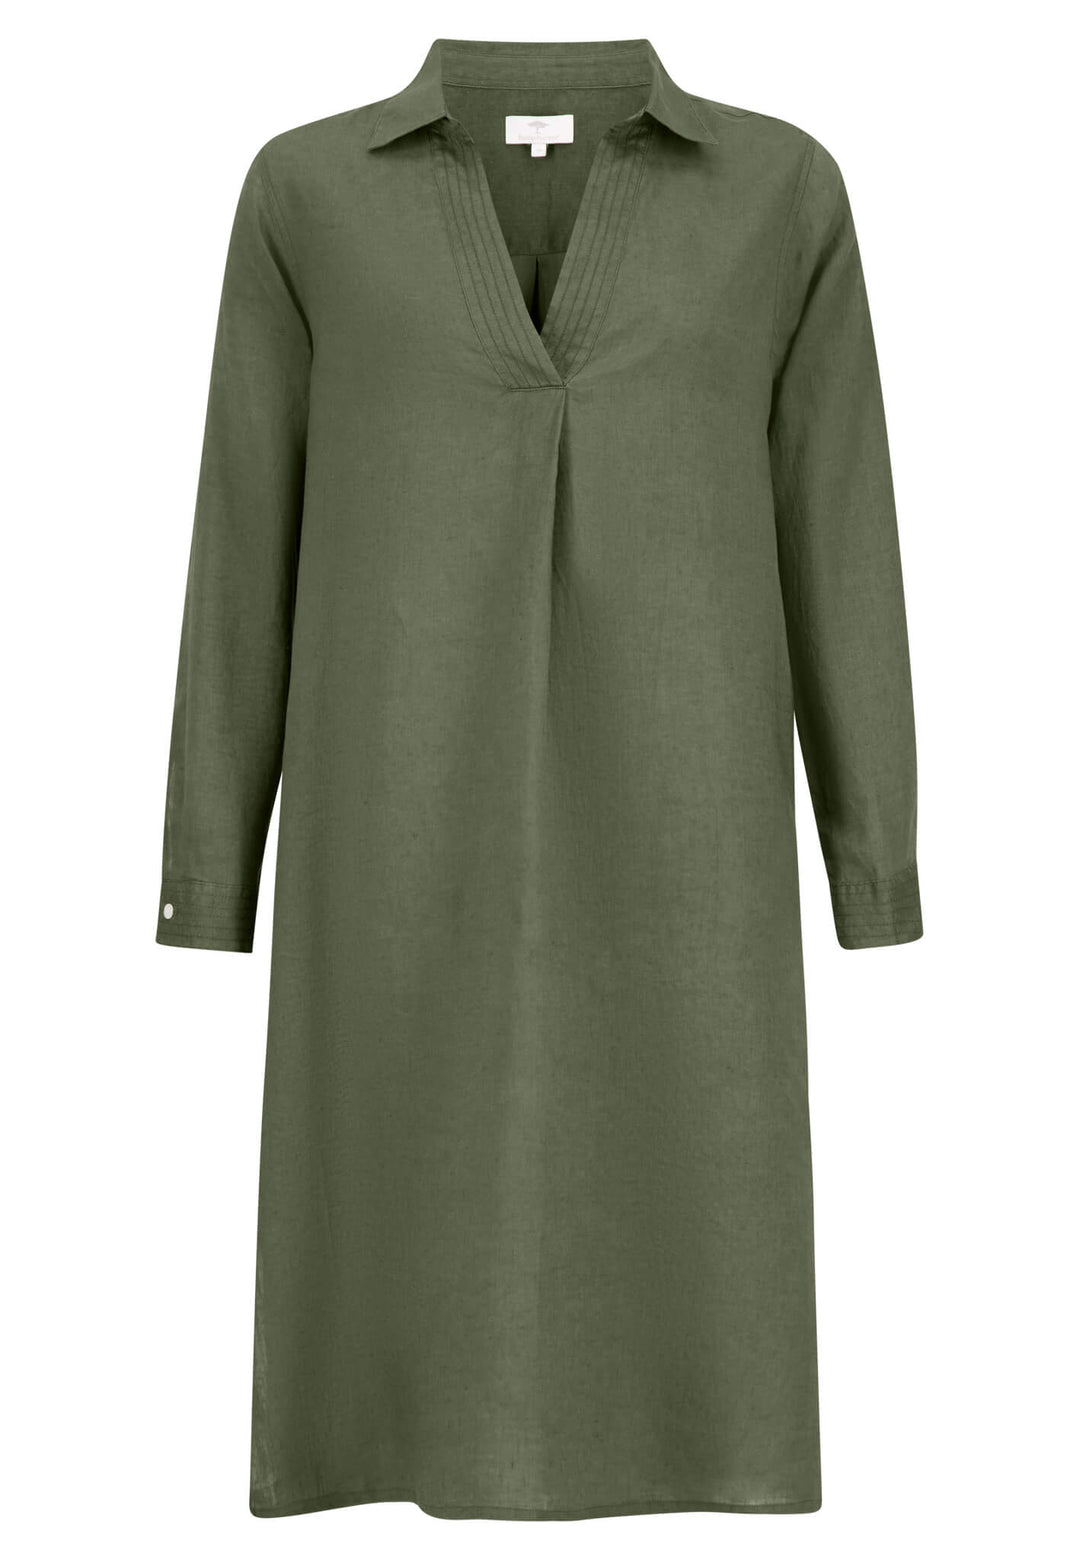 – Offizieller Linen dress FYNCH-HATTON blouse Shop Online |